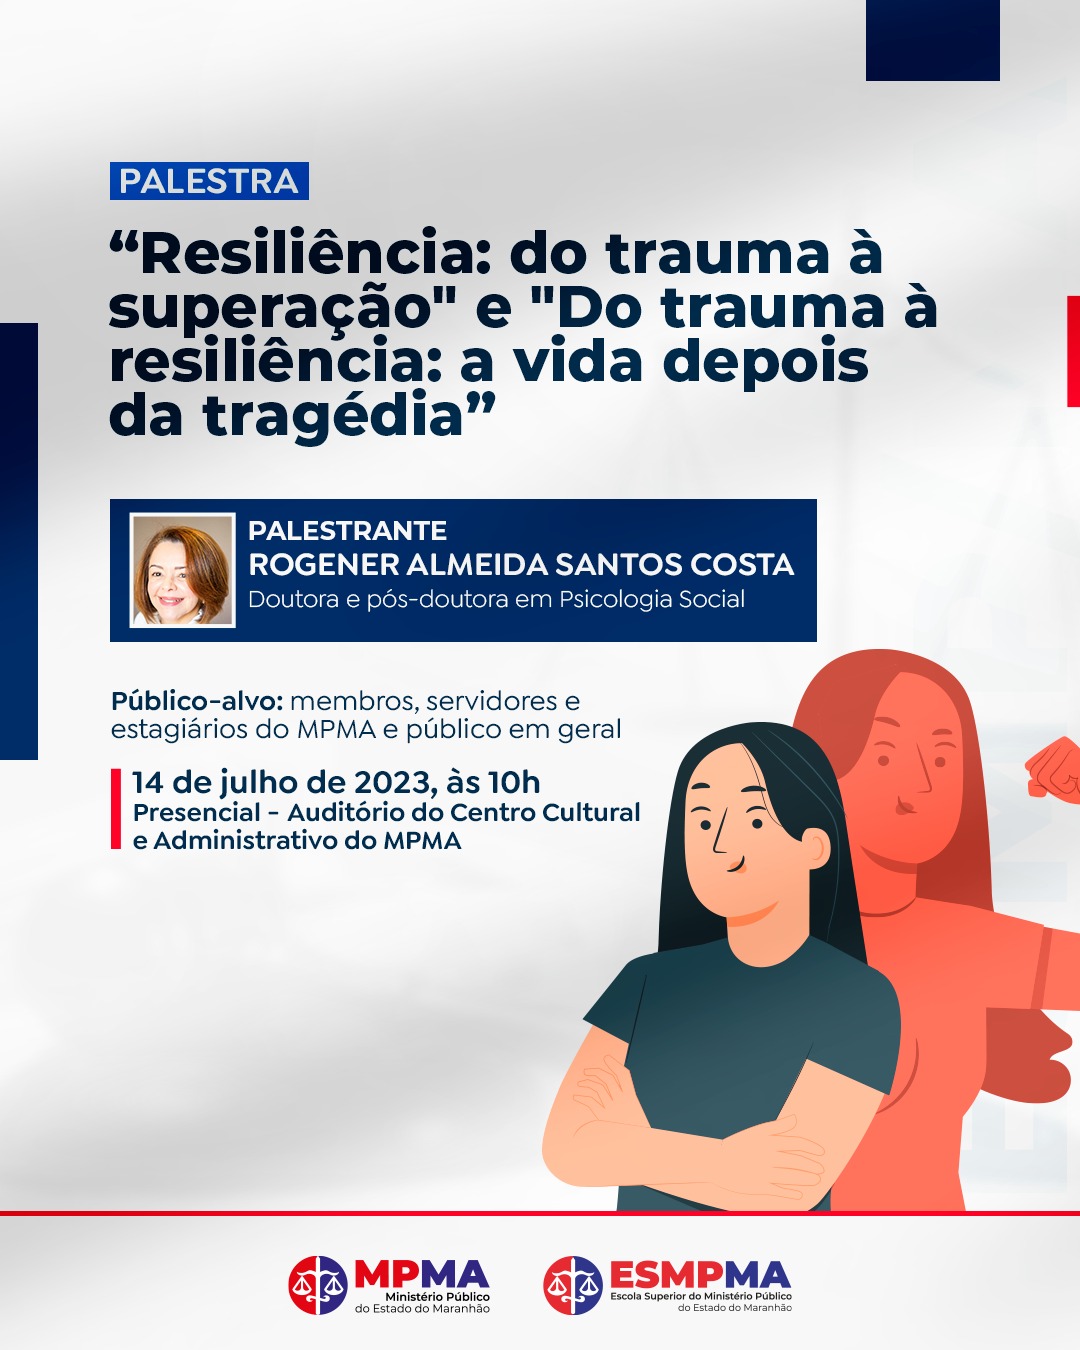 Palestra "Resiliência: do trauma à superação" e "Do trauma à resiliência: a vida depois da tragédia"